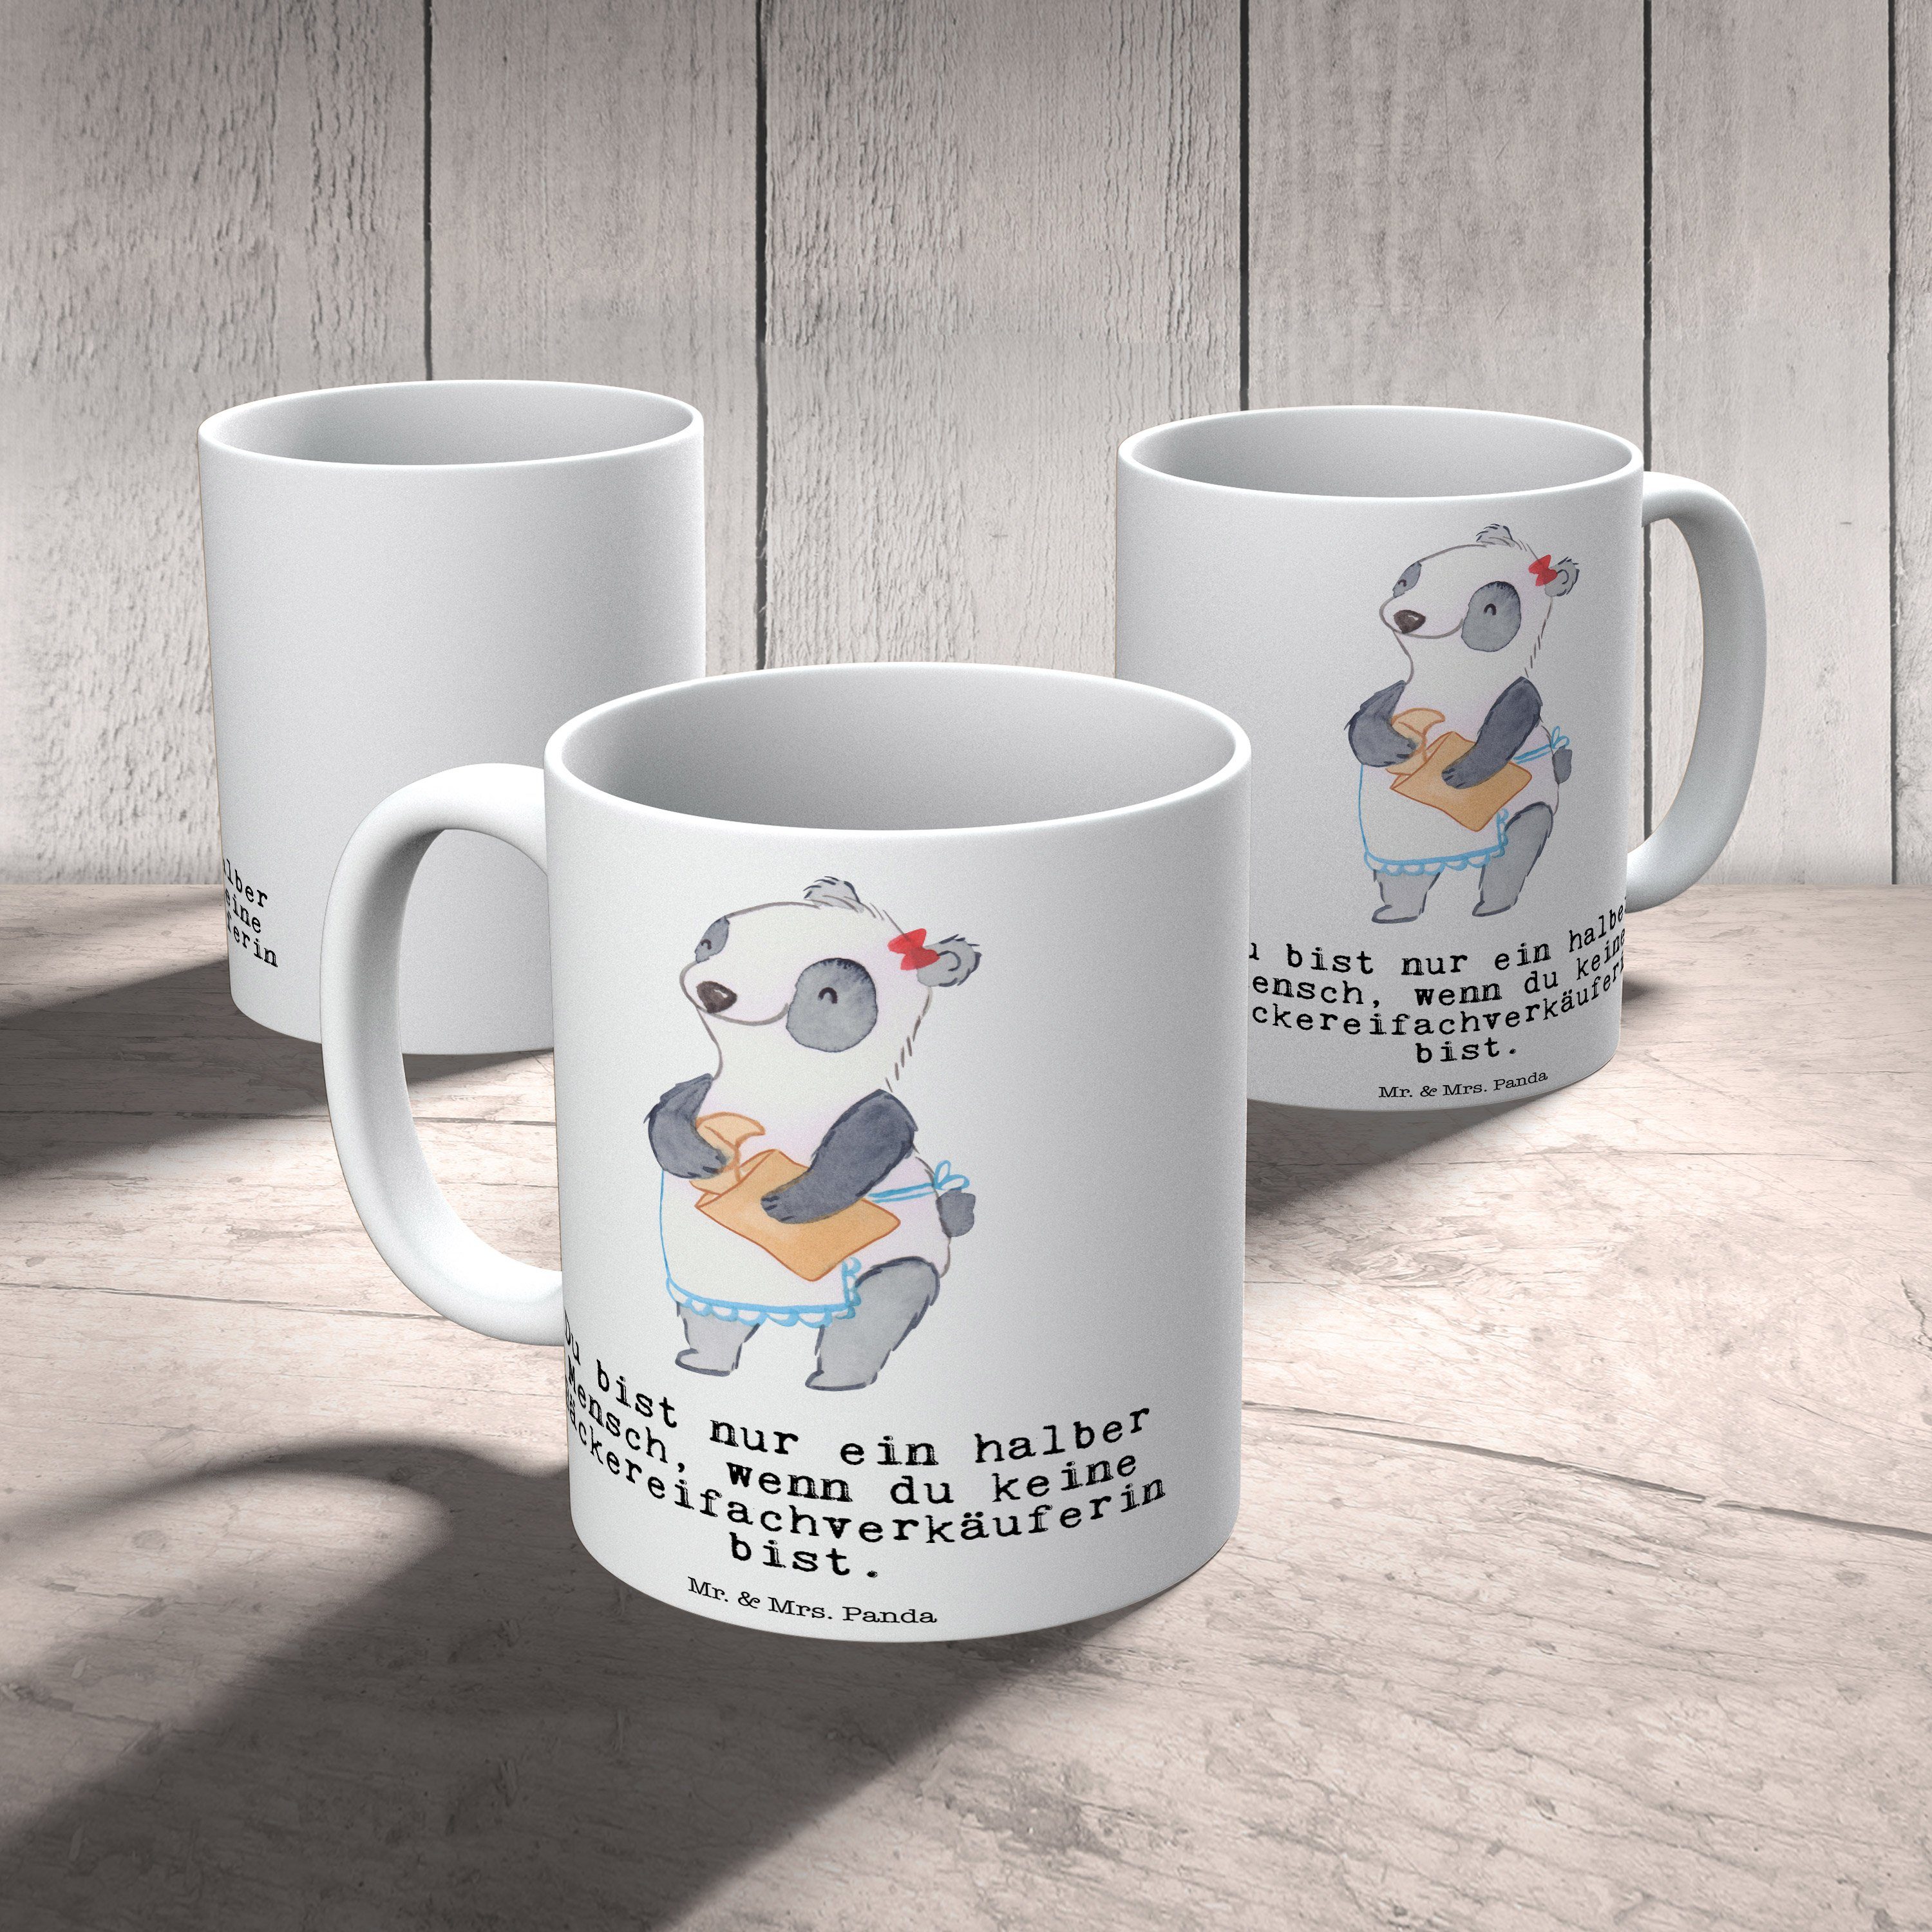 Weiß Tasse Mrs. Panda - - Keramik mit Bäckereifachverkäuferin Rente, Geschenk, Mr. & Tasse Herz Sprü,